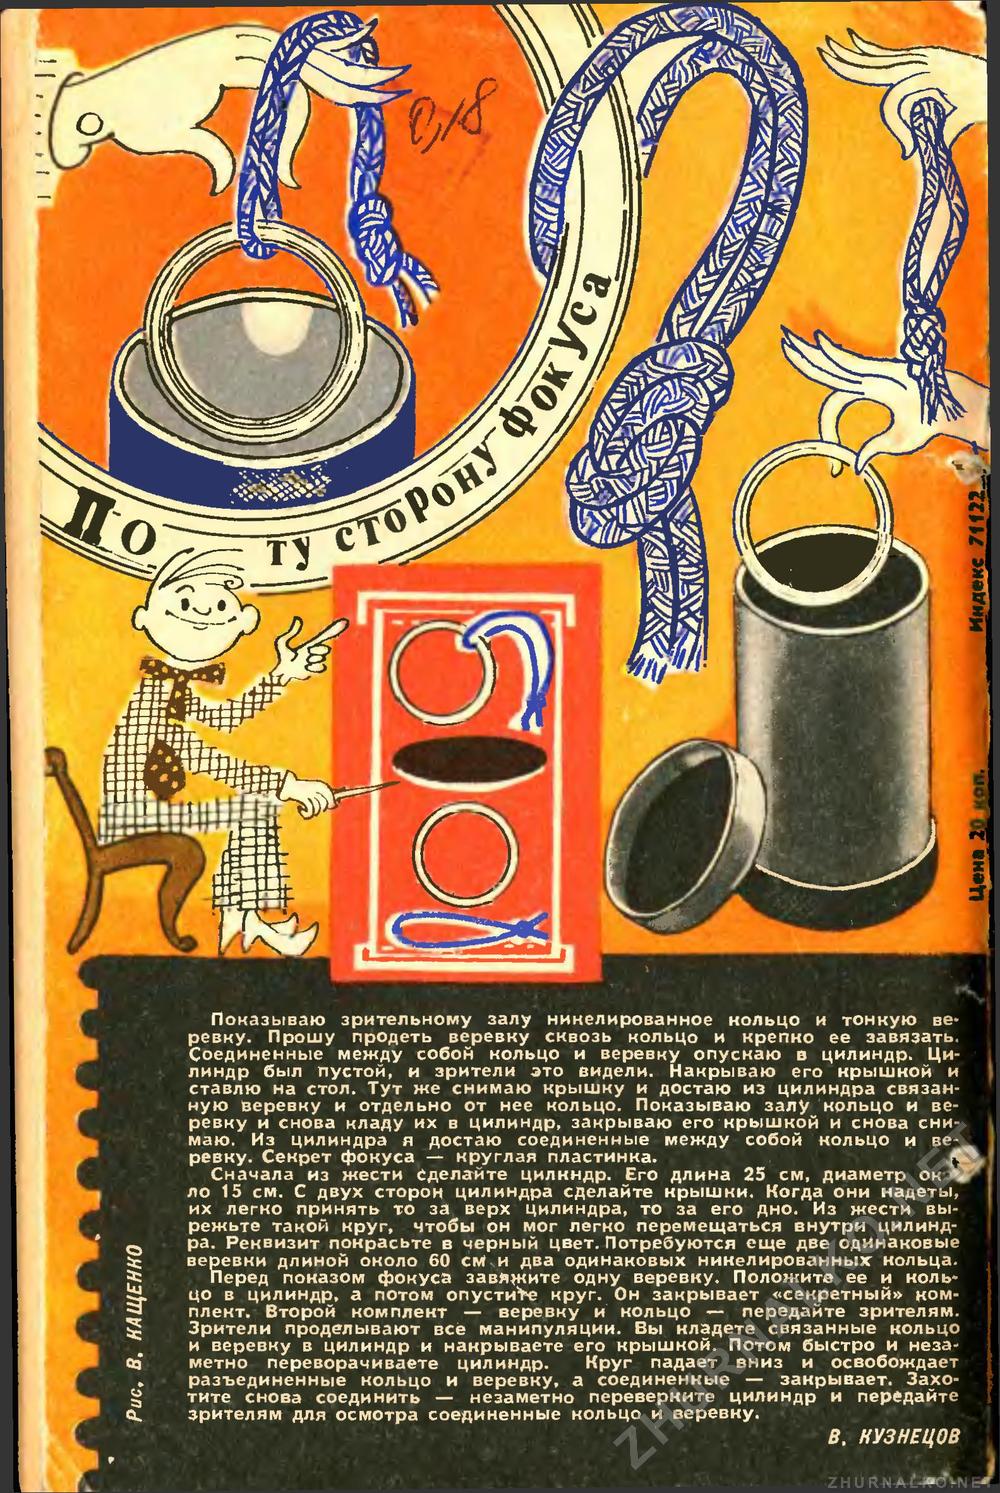   1972-11,  81